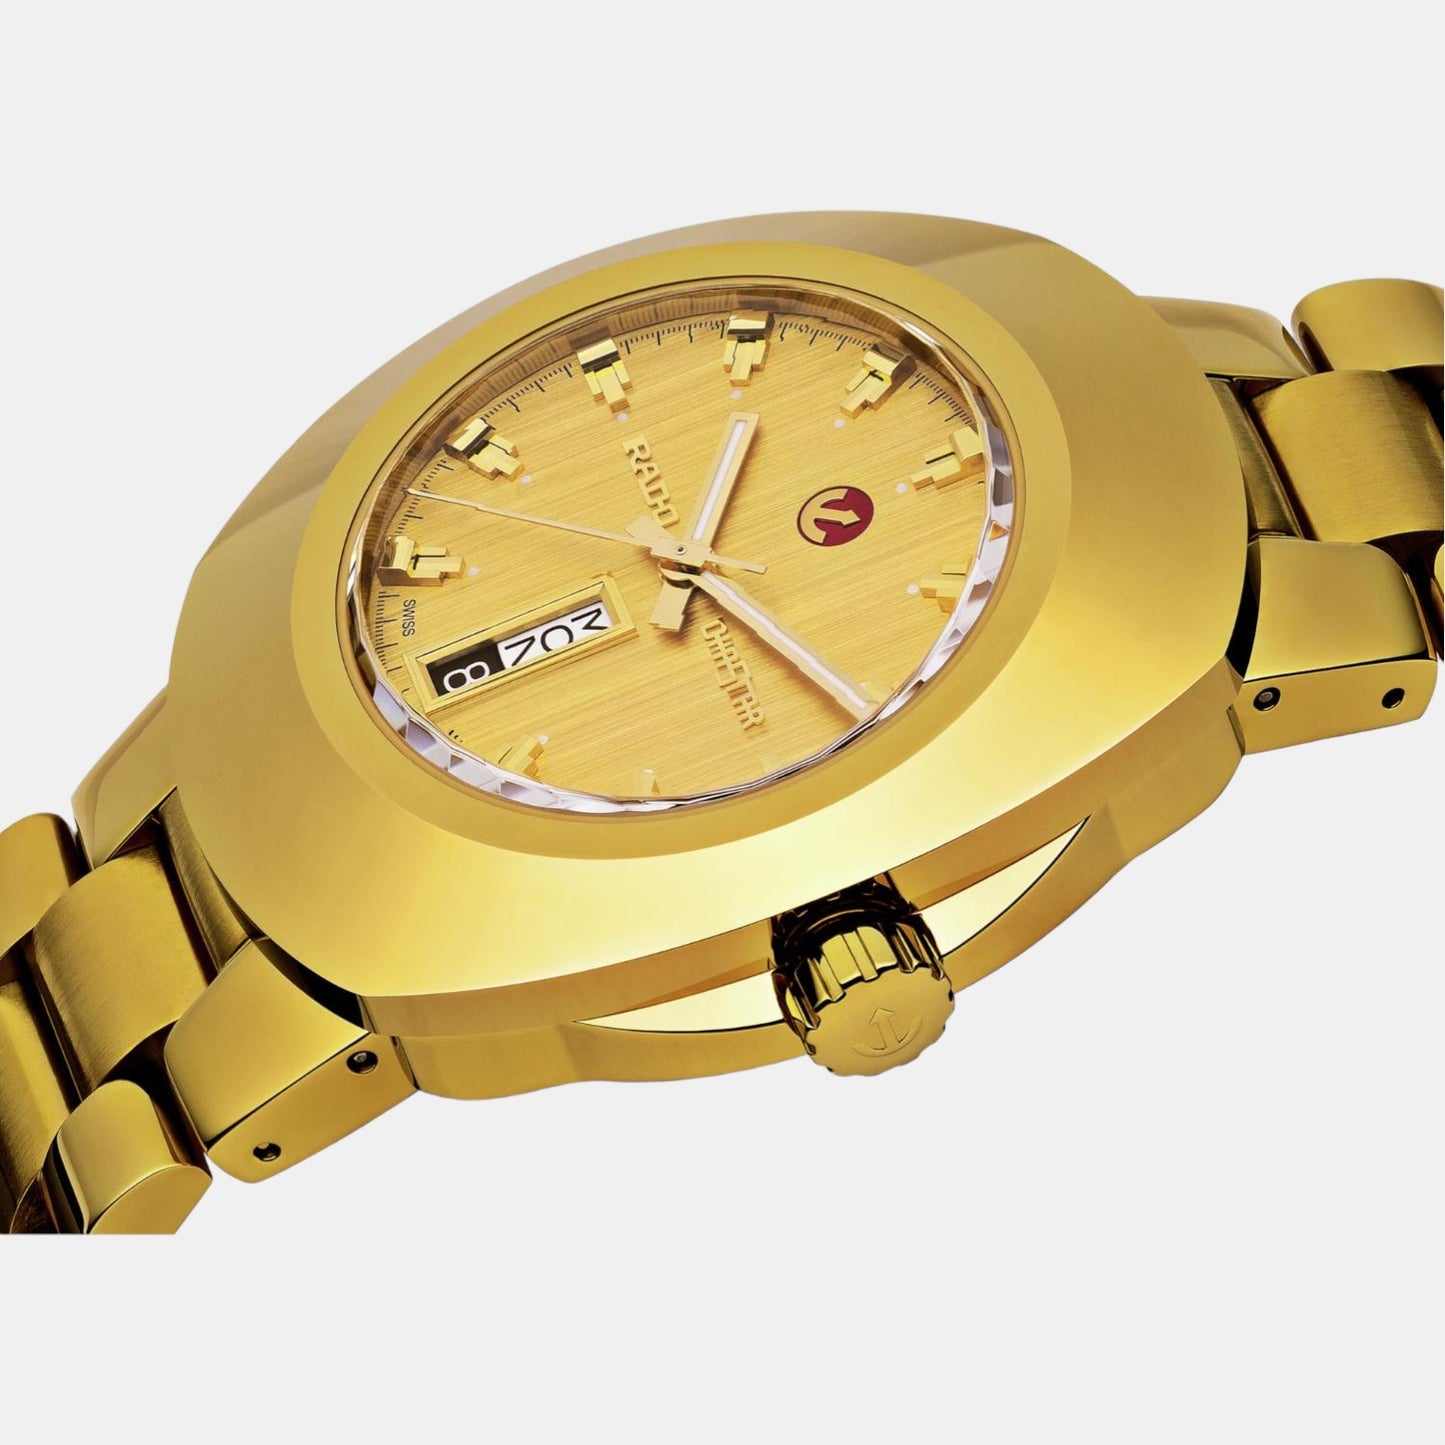 rado-stainless-steel-gold-analog-men-watch-r12999253